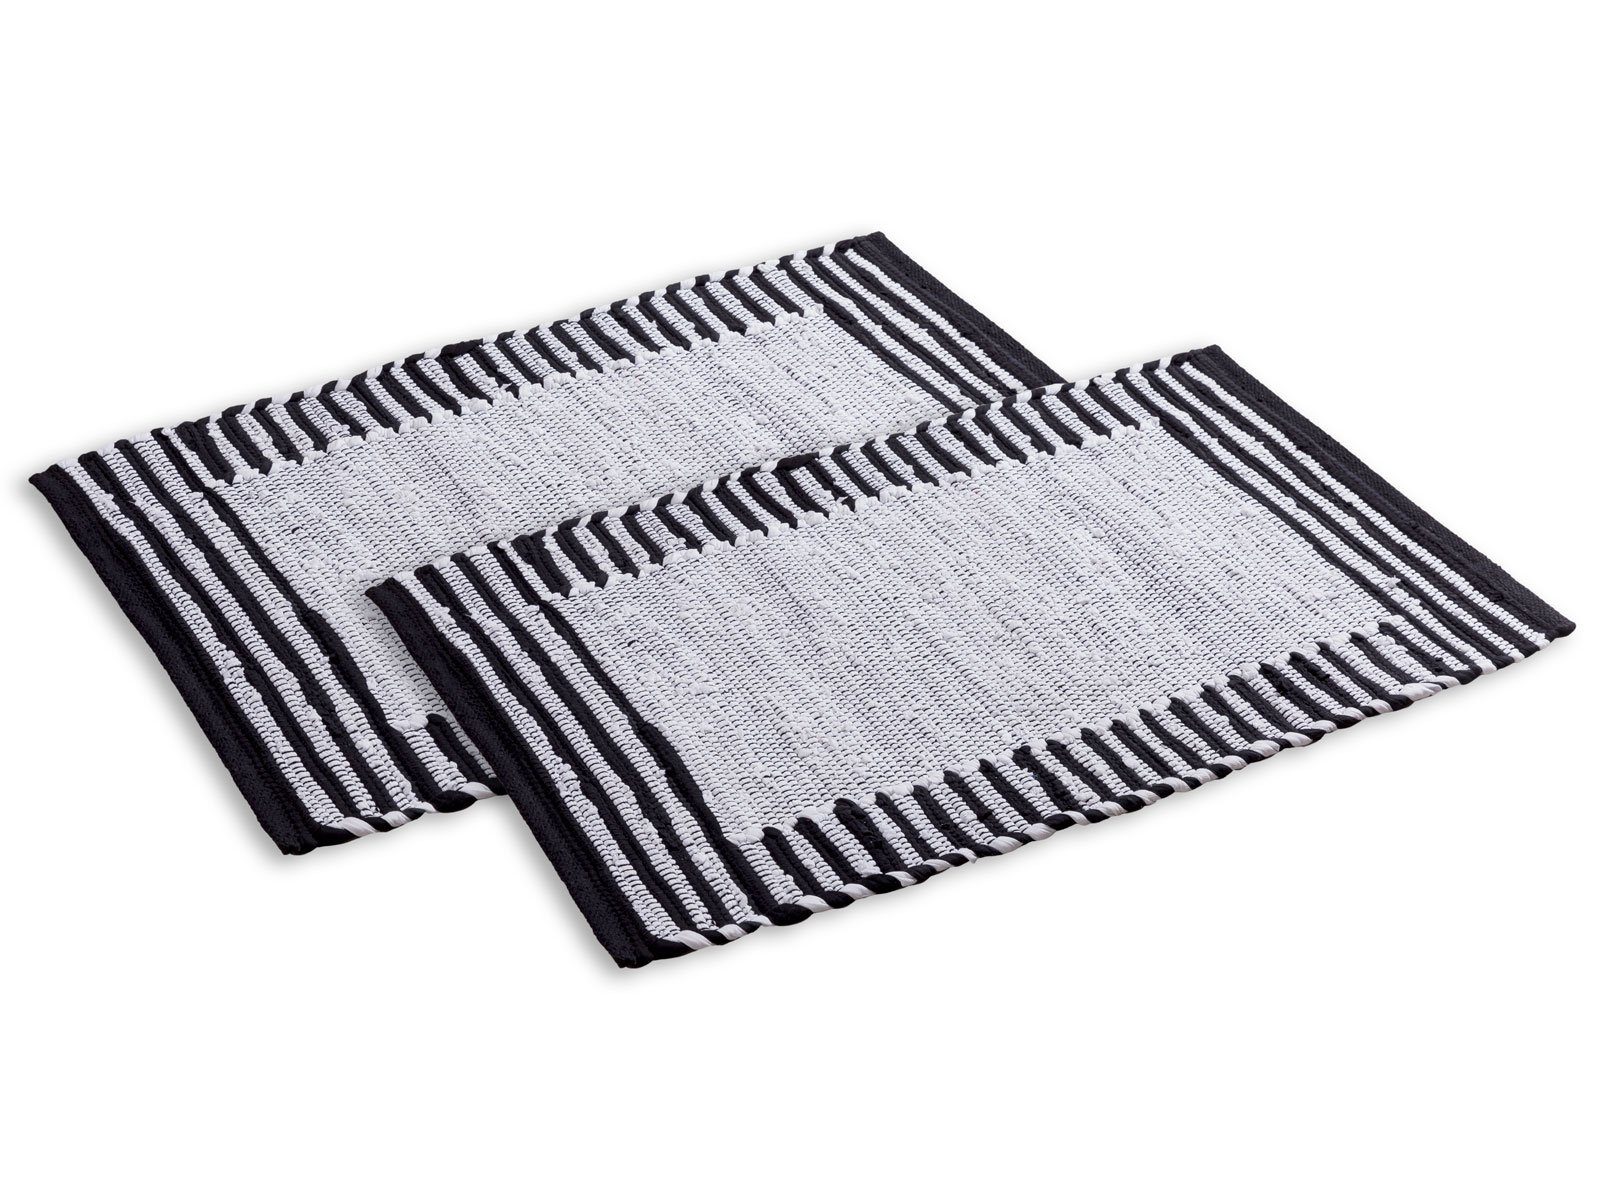 Teppich Badezimmerteppich Set 2er groß 80x50 Baumwolle Badvorleger vers Farben, Minara weiß-schwarz